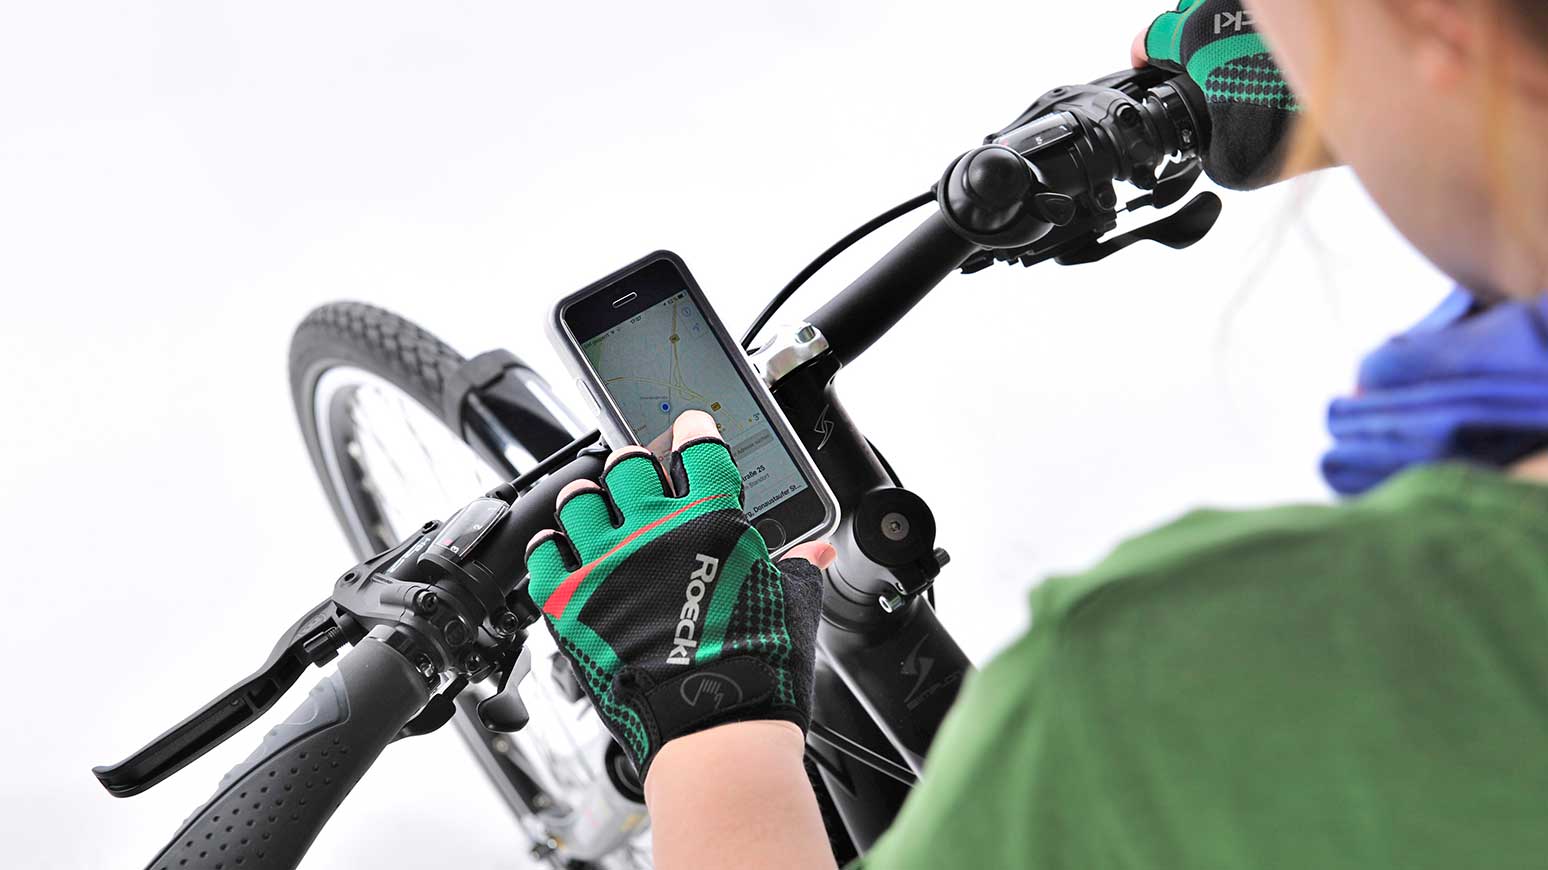 Smartphone-Halterungen fürs Fahrrad: Welche sind empfehlenswert?